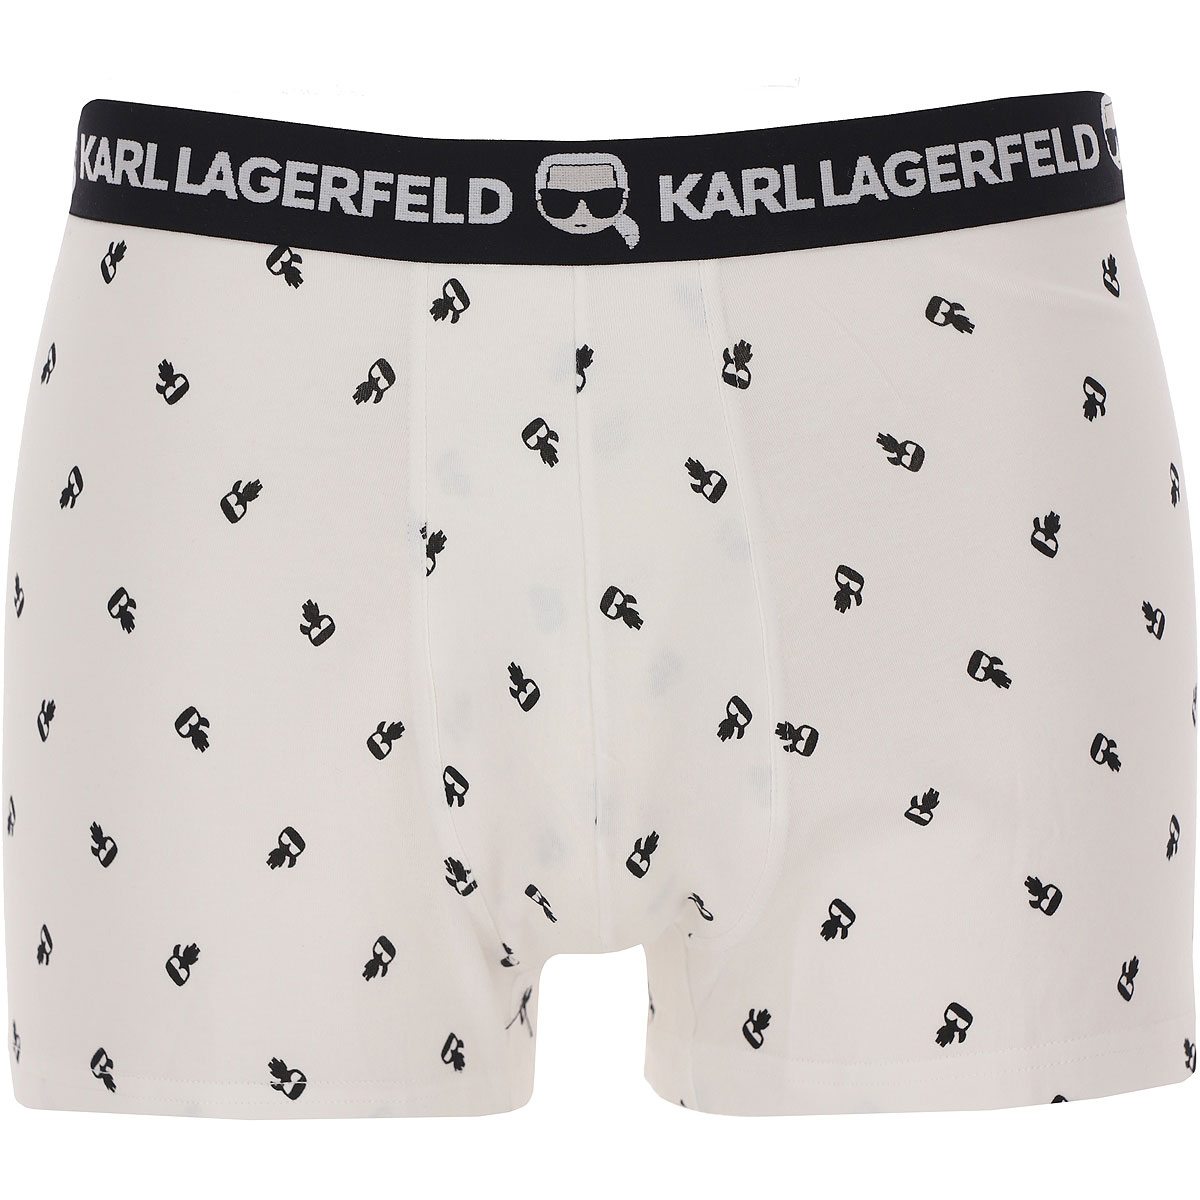 Mens Underwear Karl Lagerfeld, Style code: 220m2115-900-